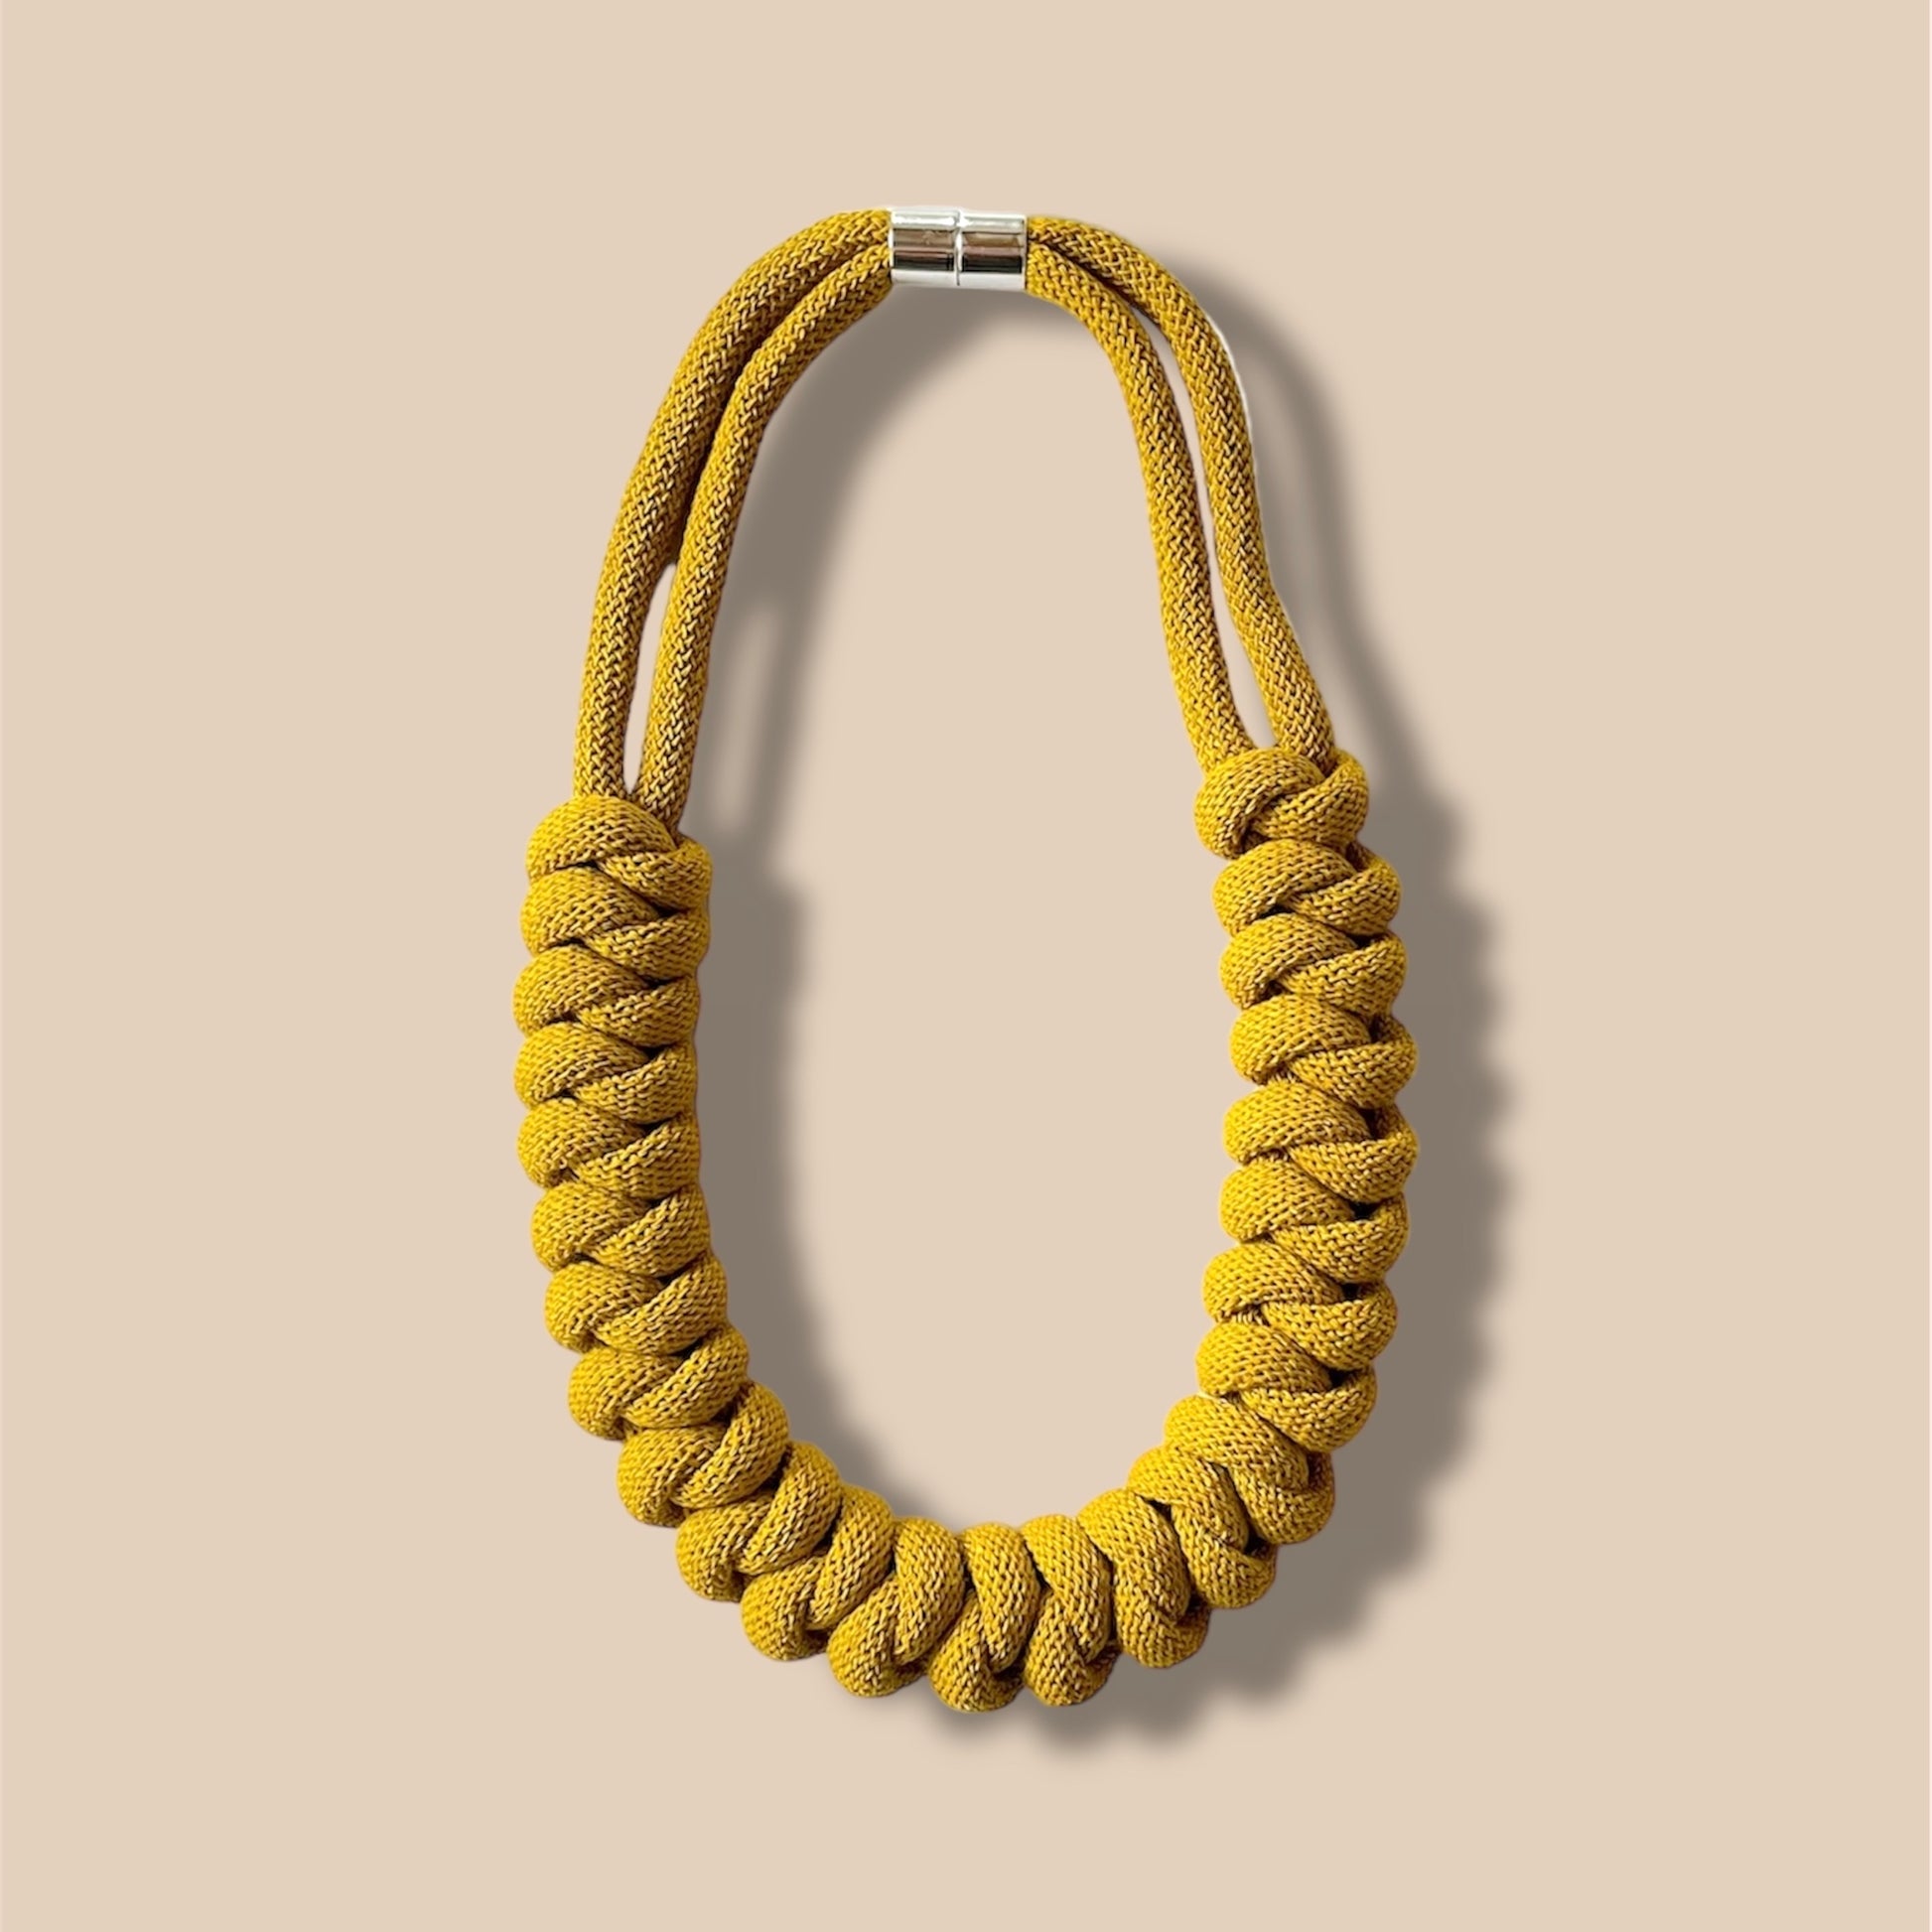 NEW Odin knot rope necklace - Knottinger